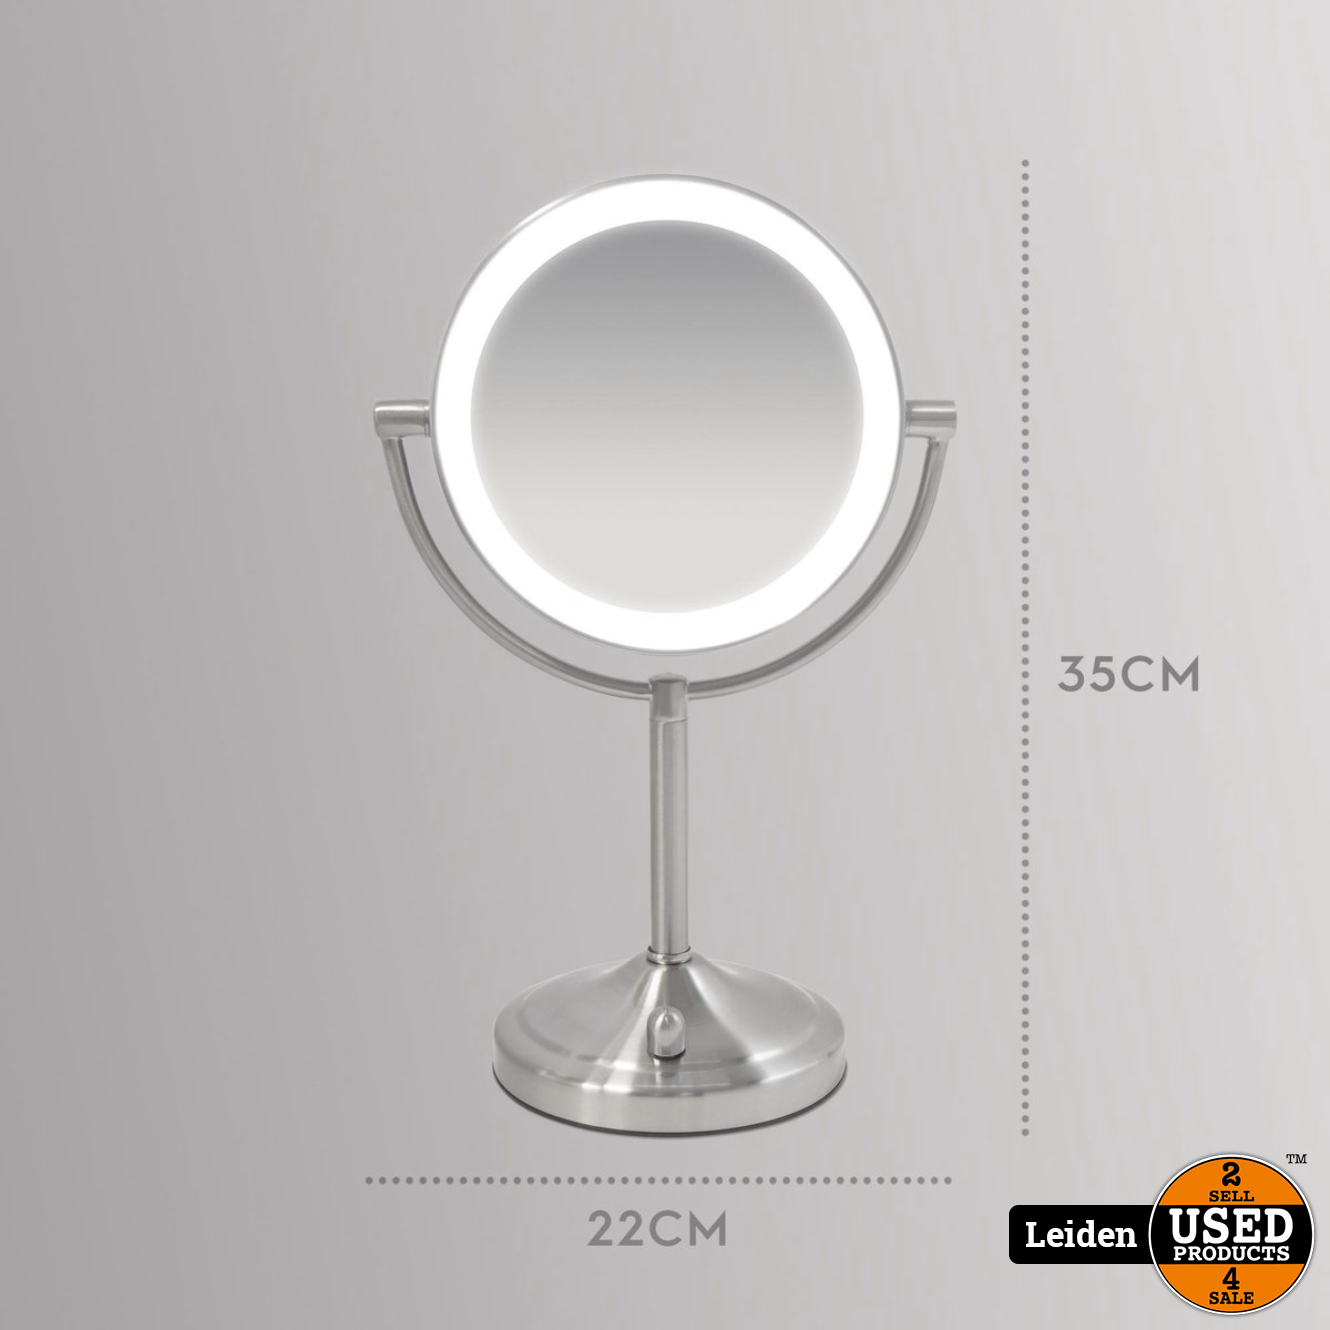 een vergoeding Scenario Socialistisch HoMedics MIR8150 Dubbelzijdige Make Up Spiegel met Verlichting - Vrijstaand  - 7x vergroting - spiegel met ringverlichting (NIEUW uit doos) - Used  Products Leiden